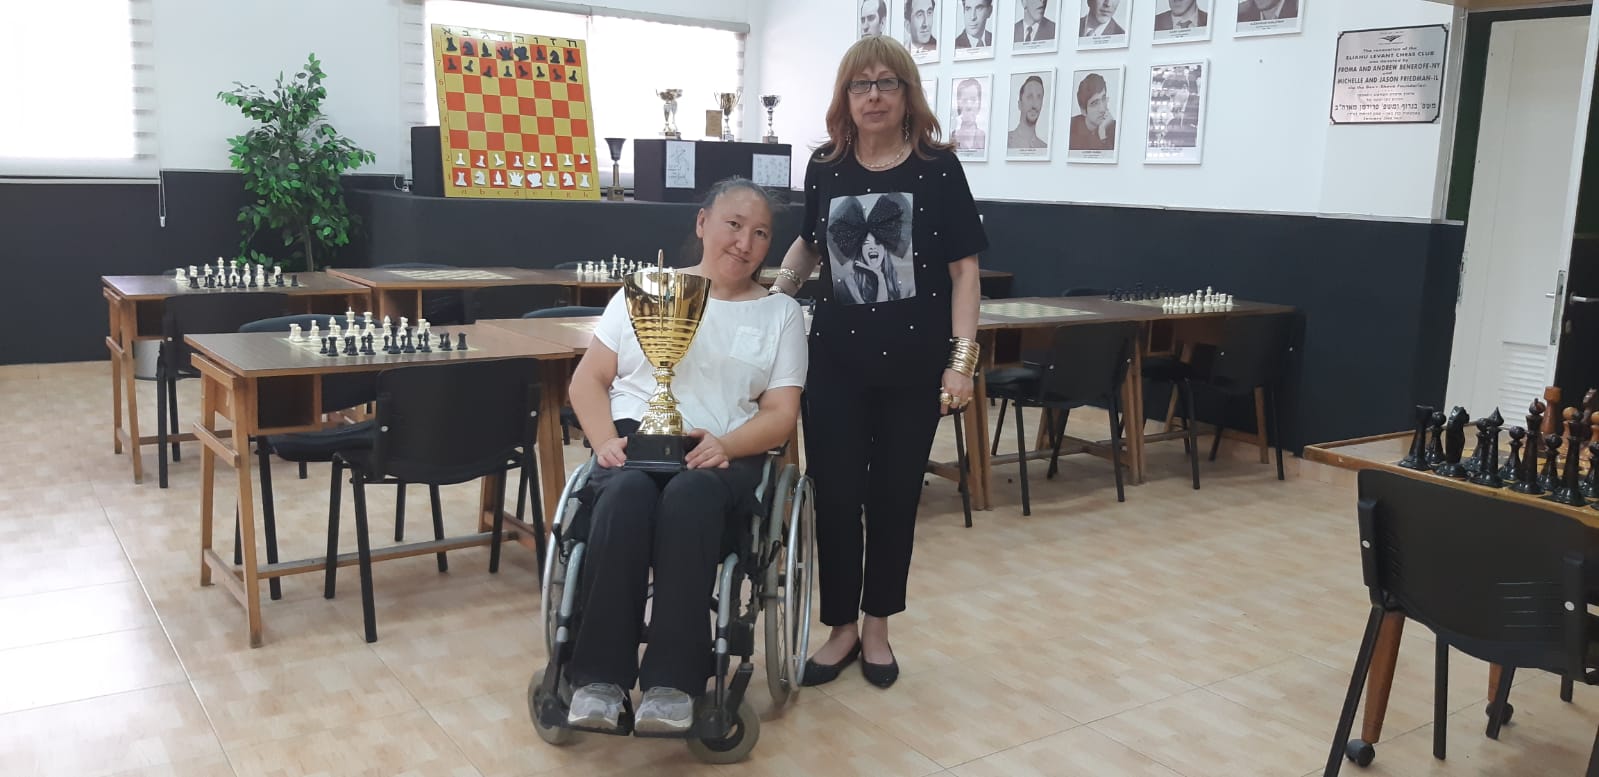 אלכסנדרה אלכסנדרוב  ואילנה דוד, באדיבות מועדון השחמט באר שבע